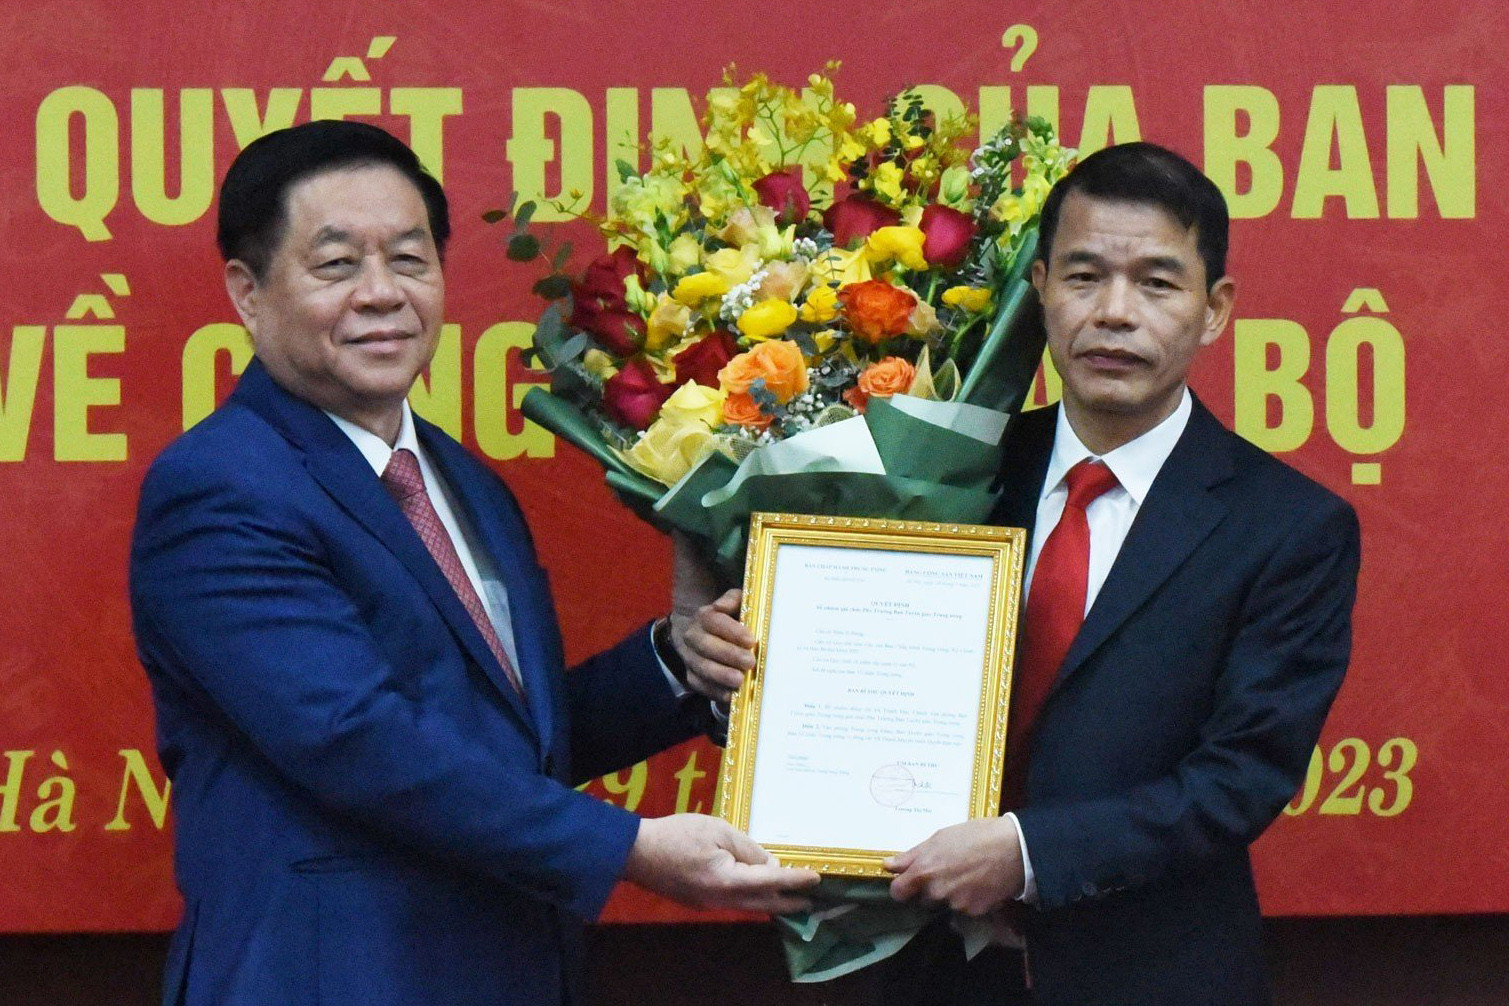 Ông Vũ Thanh Mai giữ chức Phó Trưởng Ban Tuyên giáo Trung ương